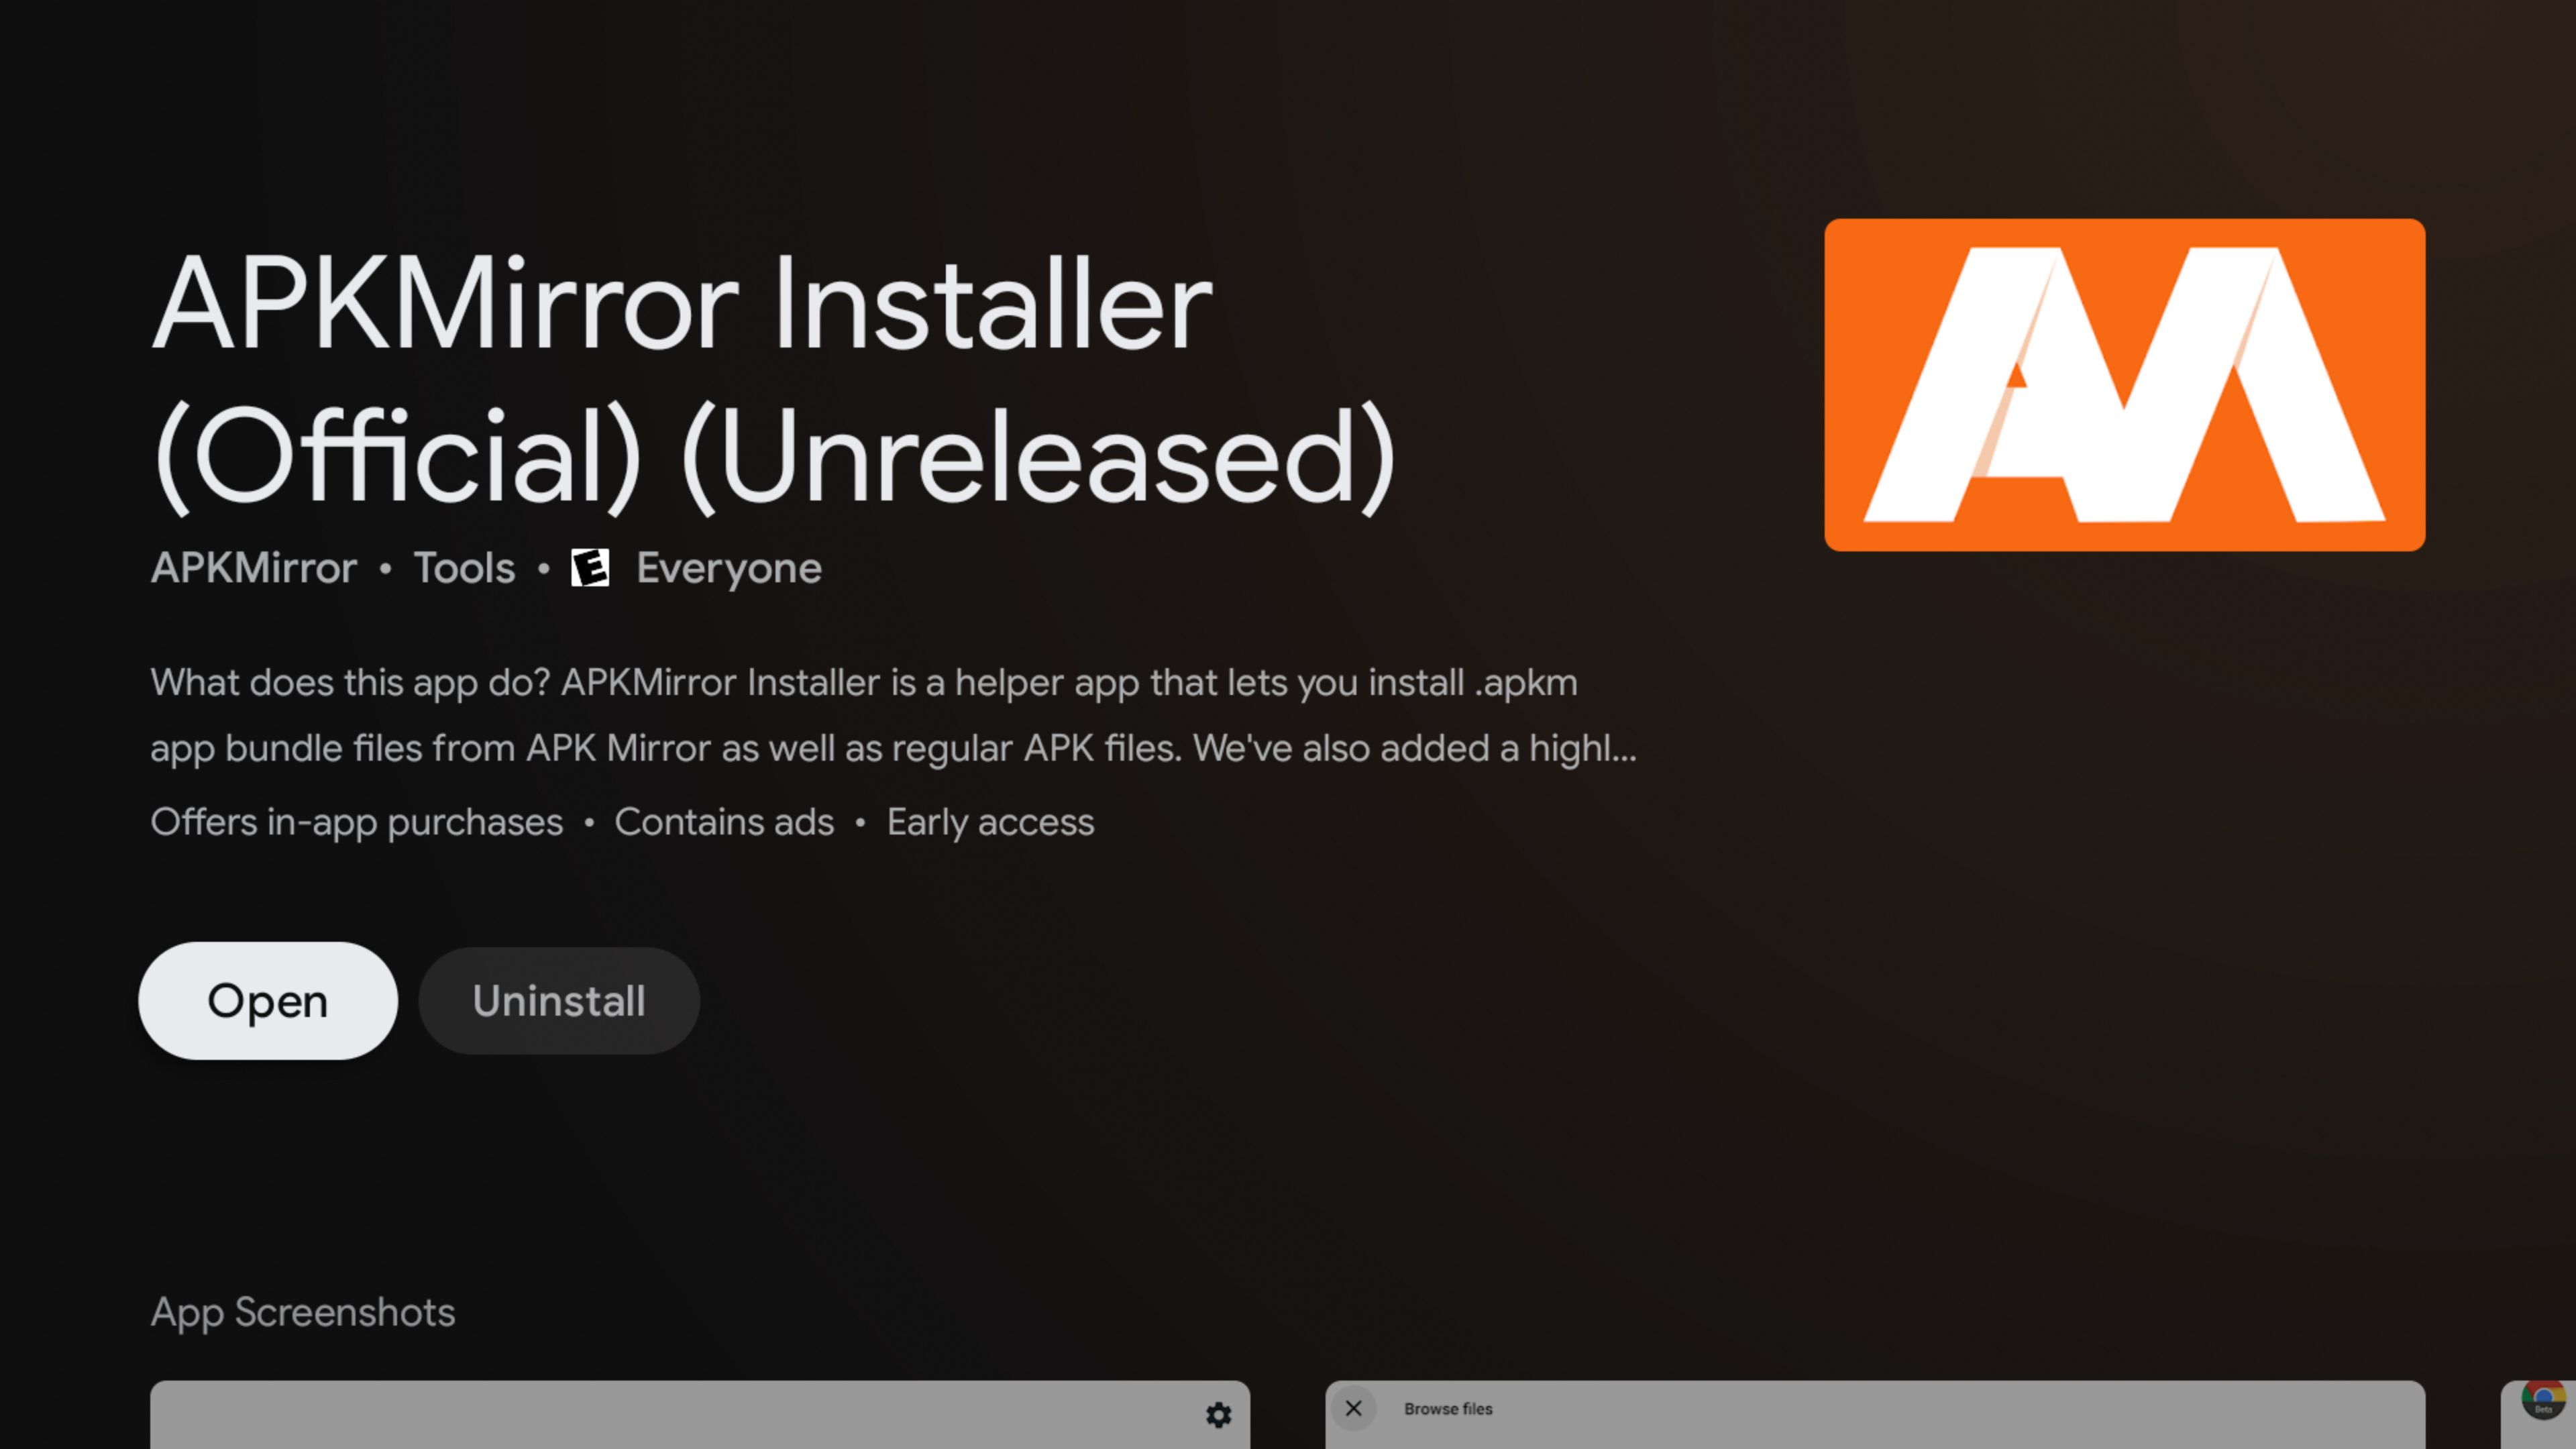 L'app APKMirror Installer è disponibile su Android TV